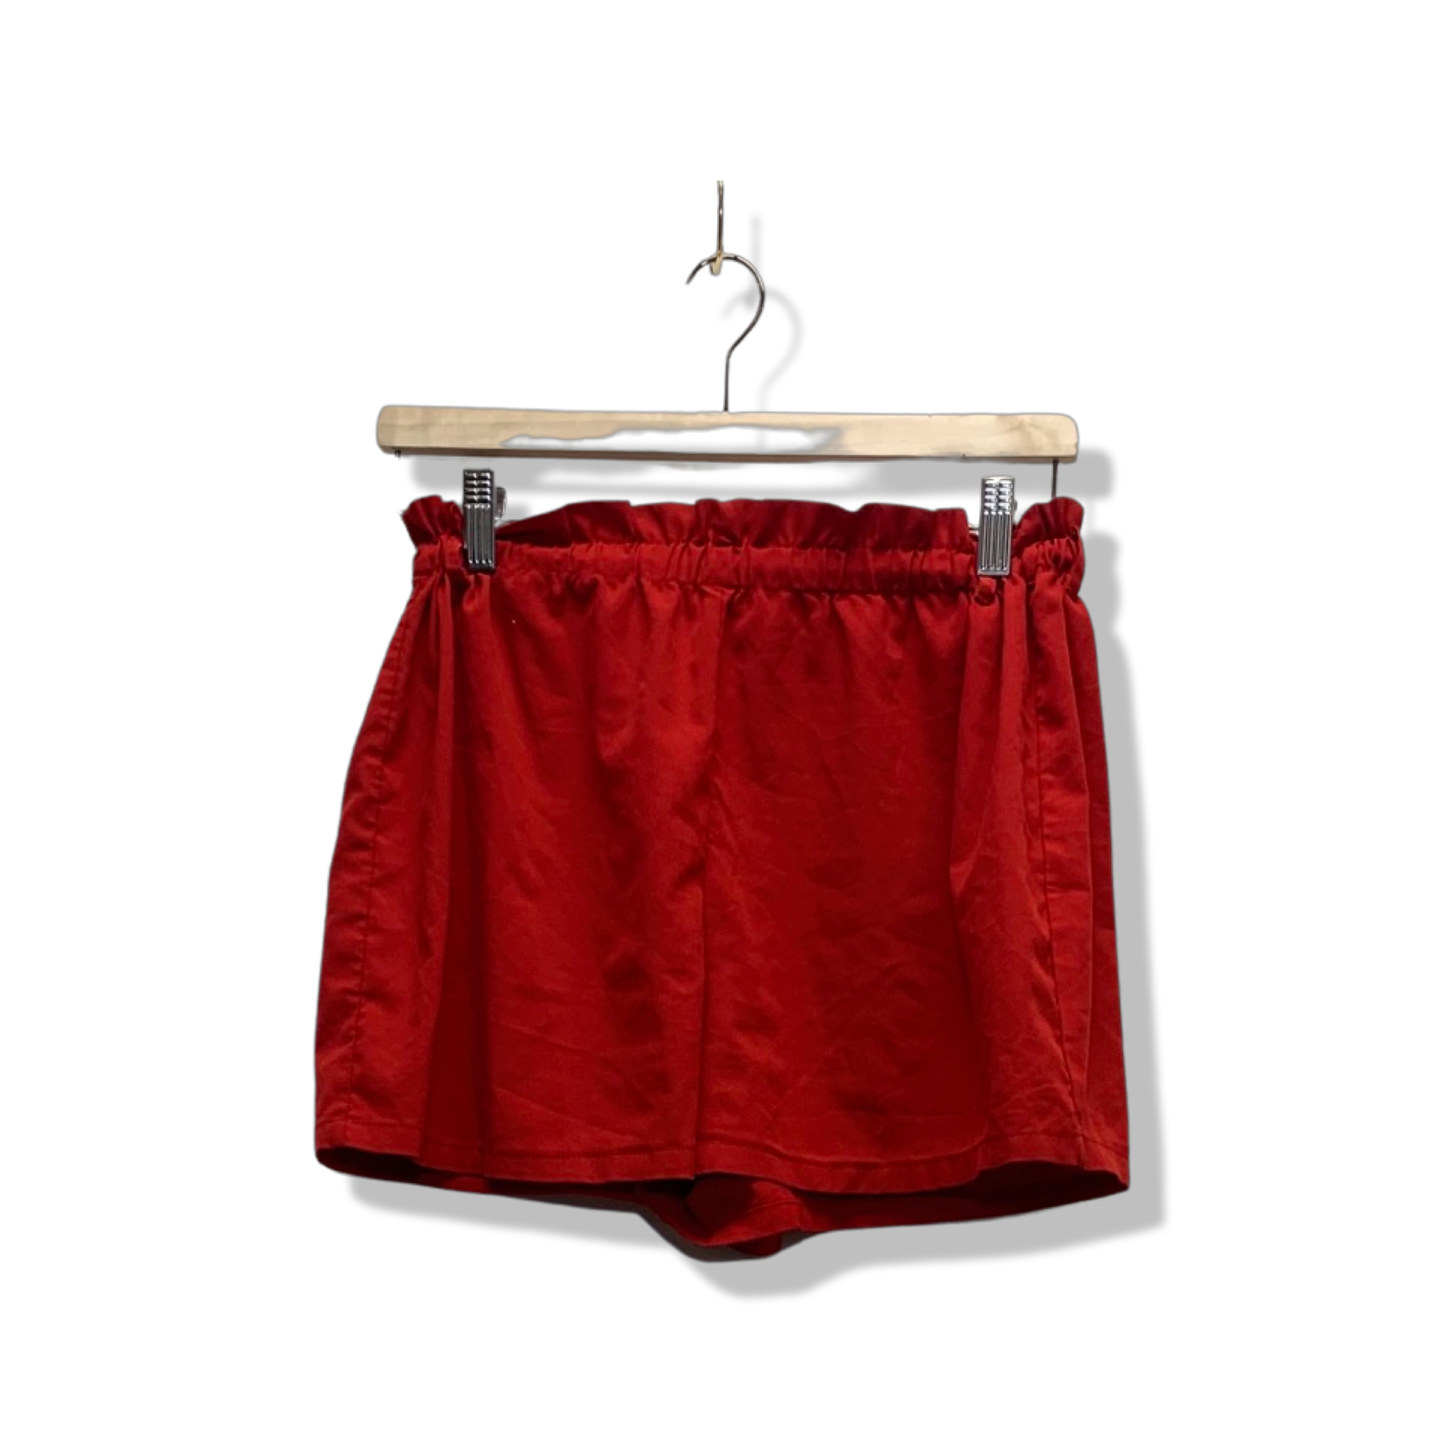 Medium - Lounge Shorts